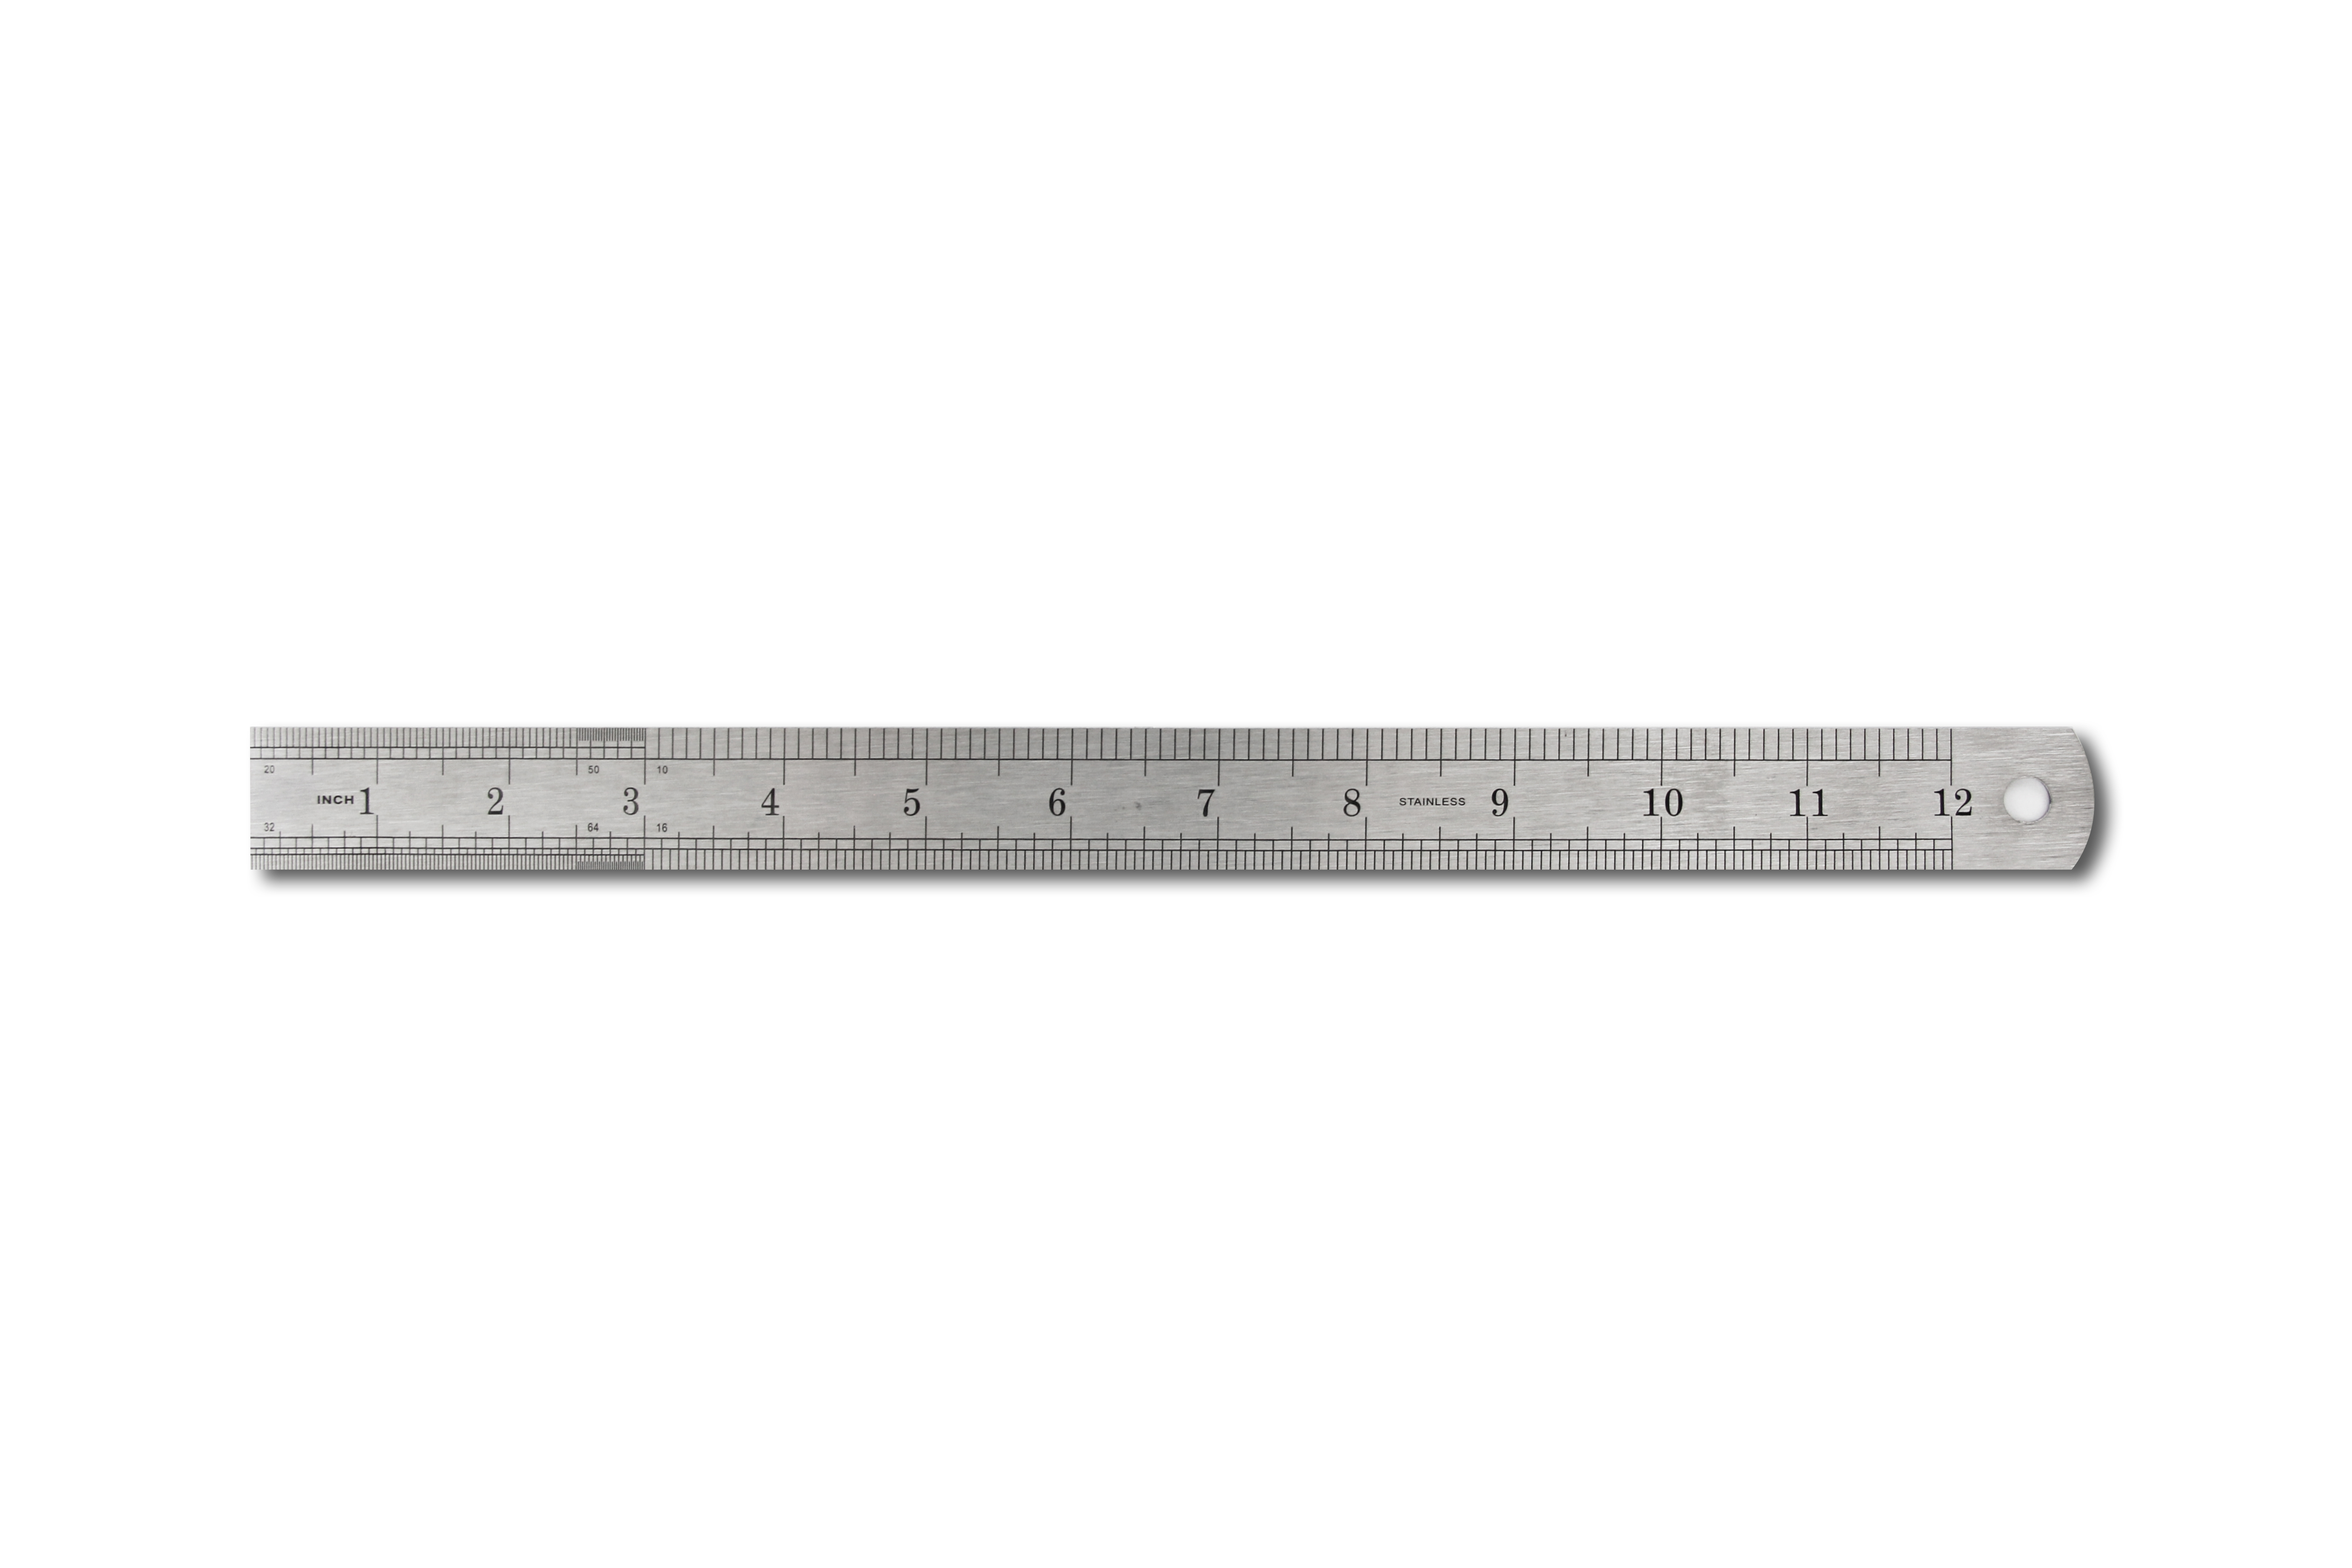 300mm Einstellbare Kombination Set Quadrat Schiebe Metall Lineal Schreiber Level 